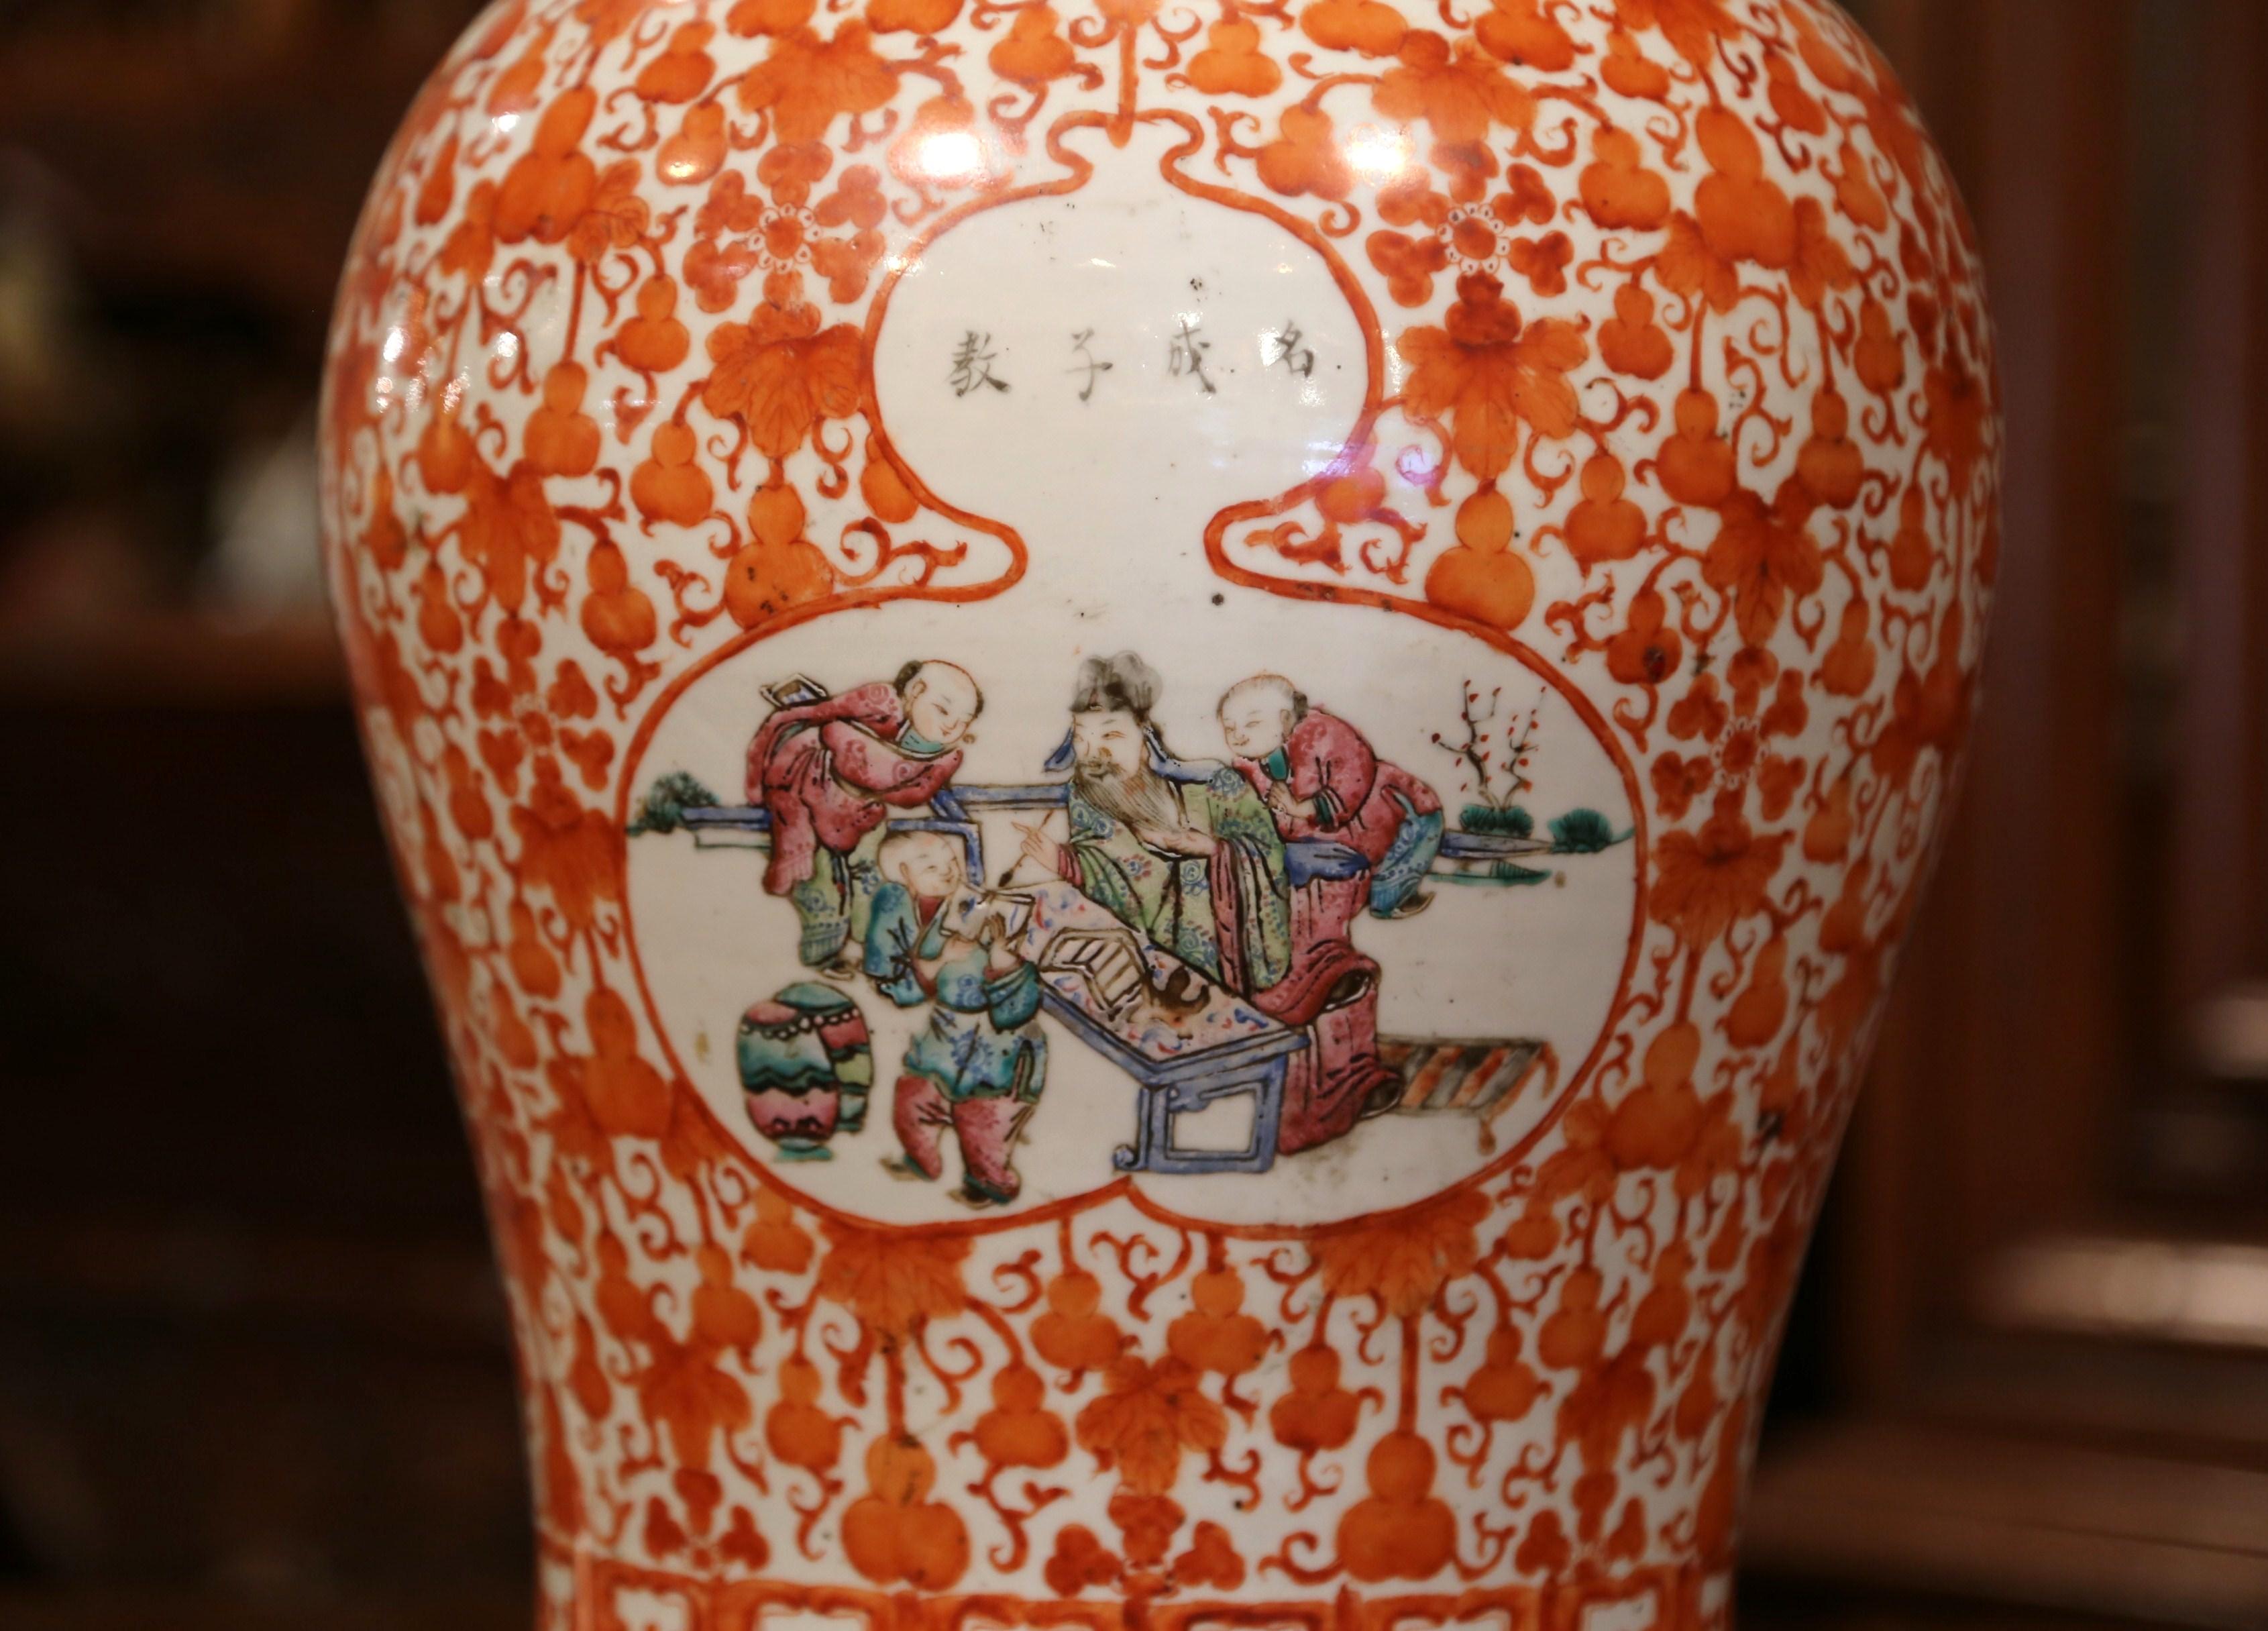 Décorez une console avec cet important pot à gingembre antique en porcelaine. Créé en Chine vers 1840 et de forme ronde, ce vase sculpté et coloré présente un décor floral et est également orné d'un médaillon central avec des figures chinoises